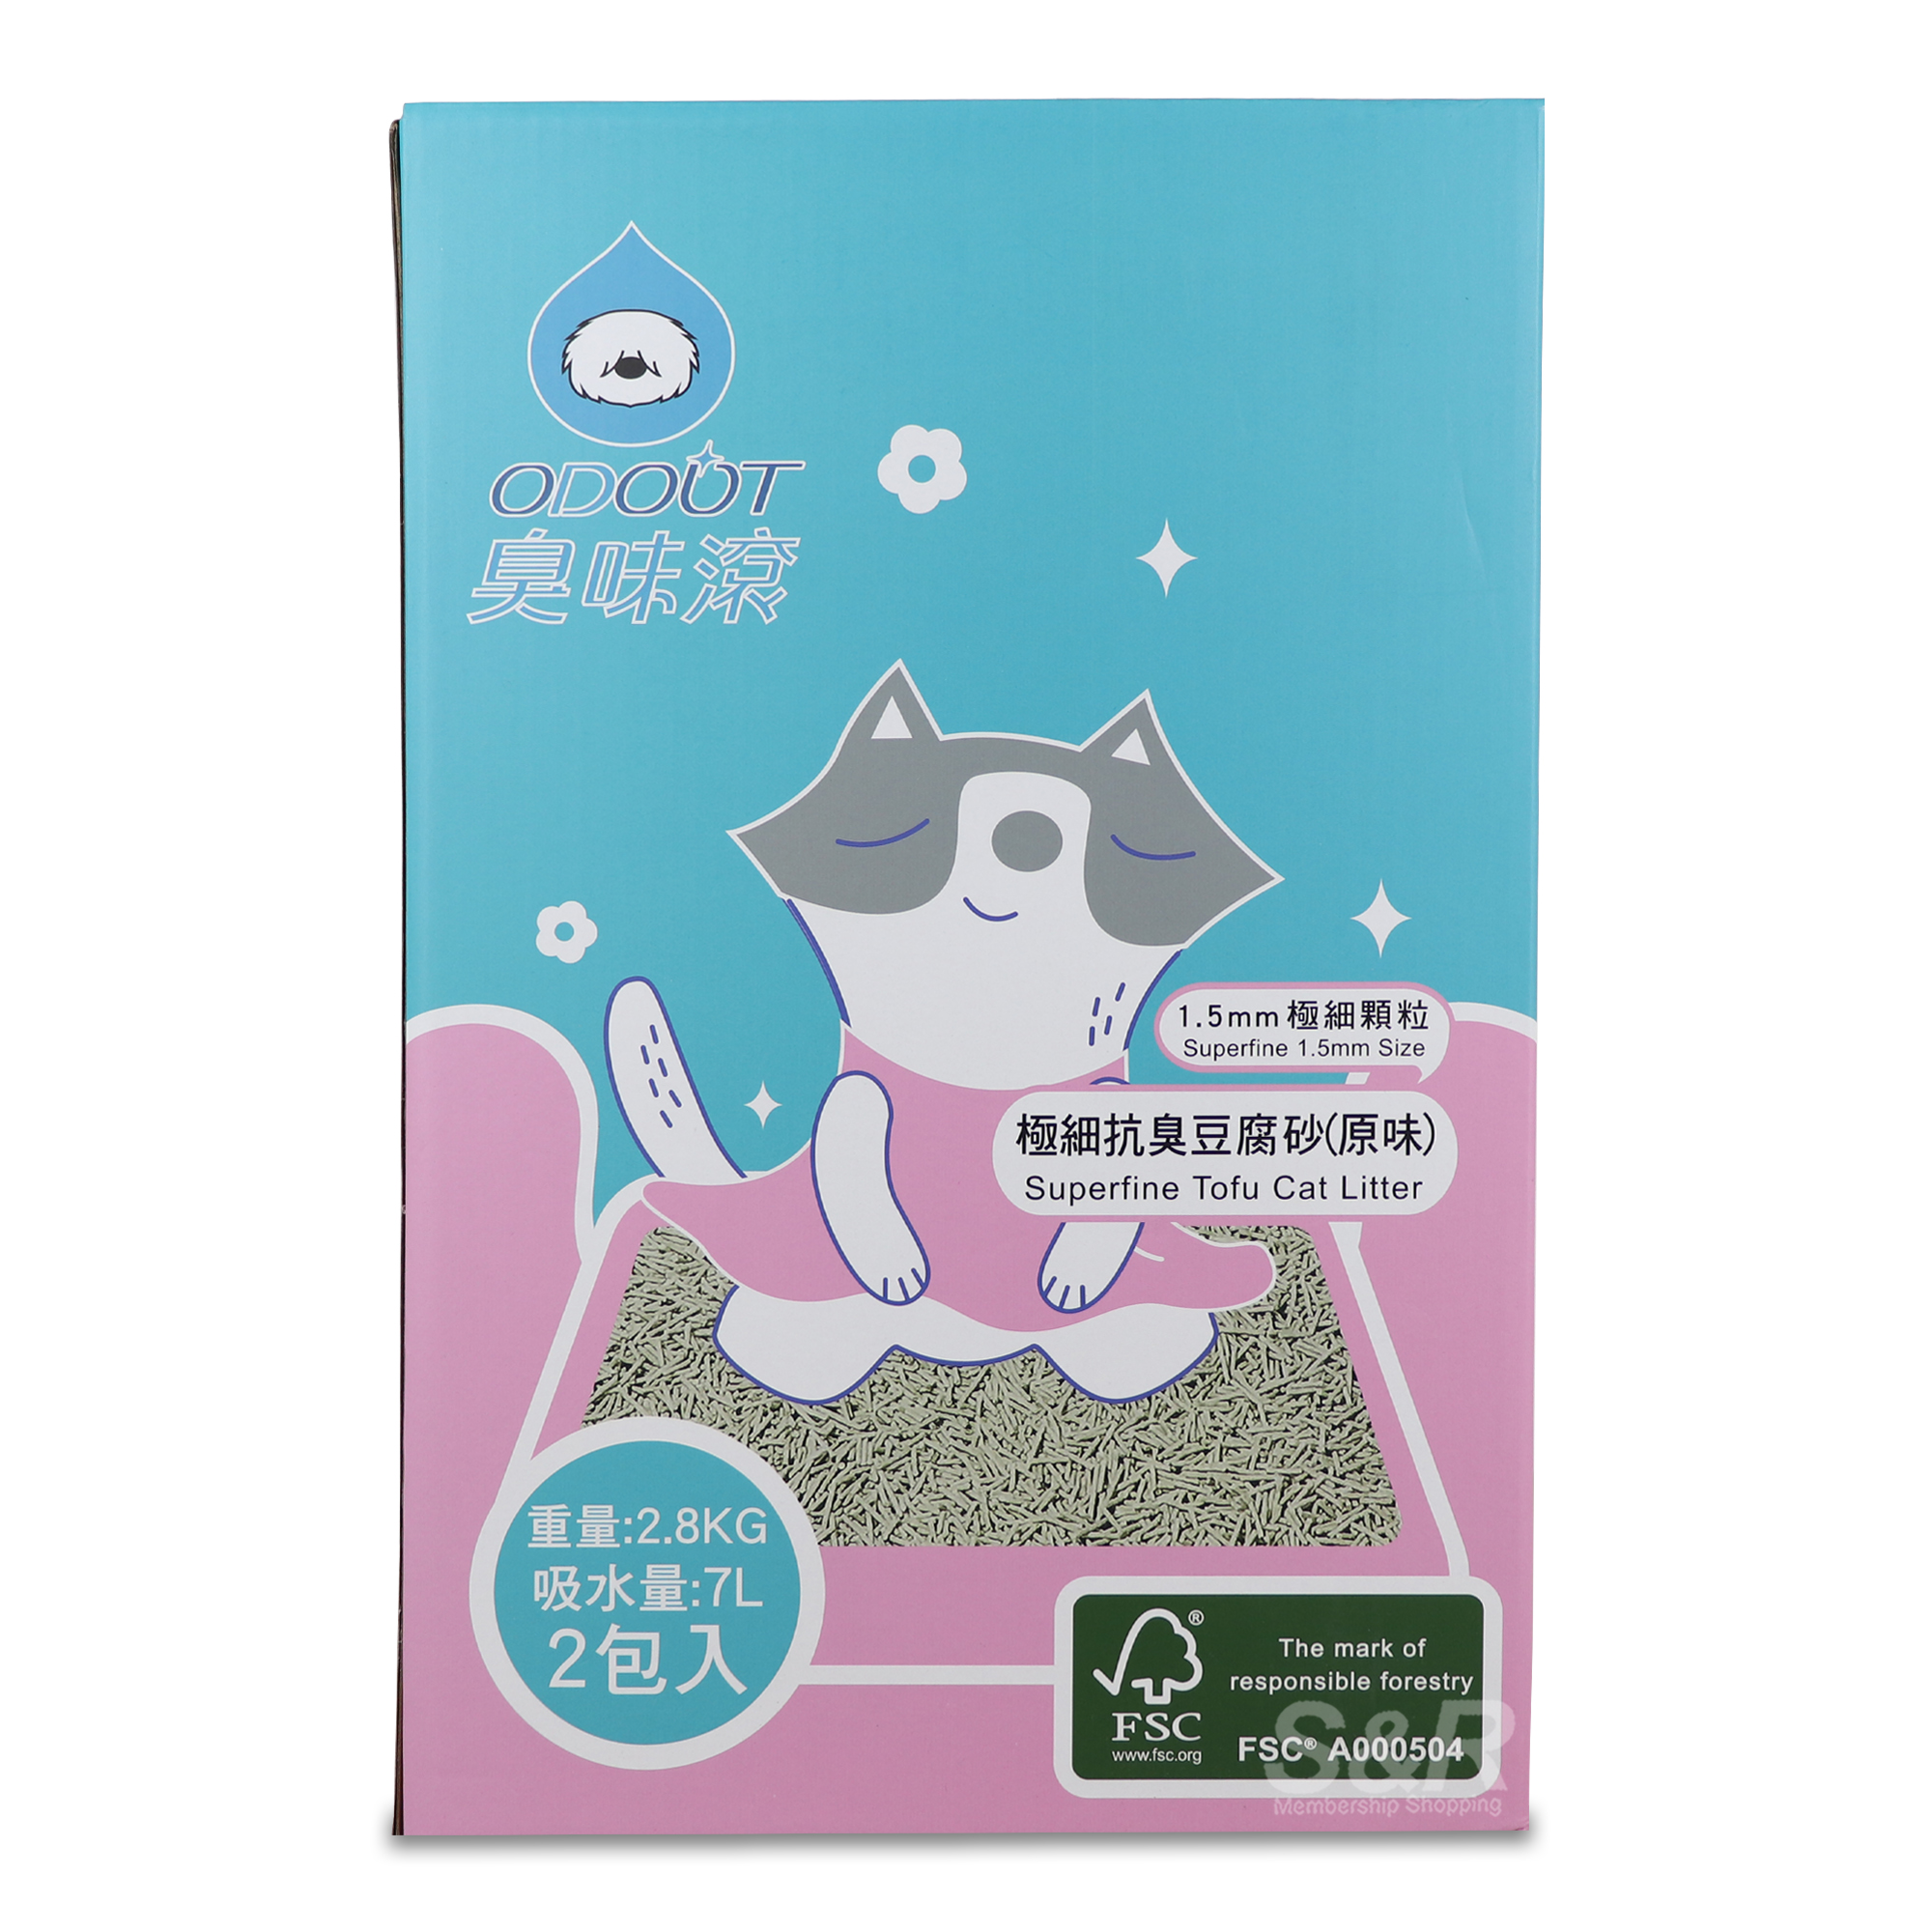 Odout Super Tofu Cat Litter 2.8kg